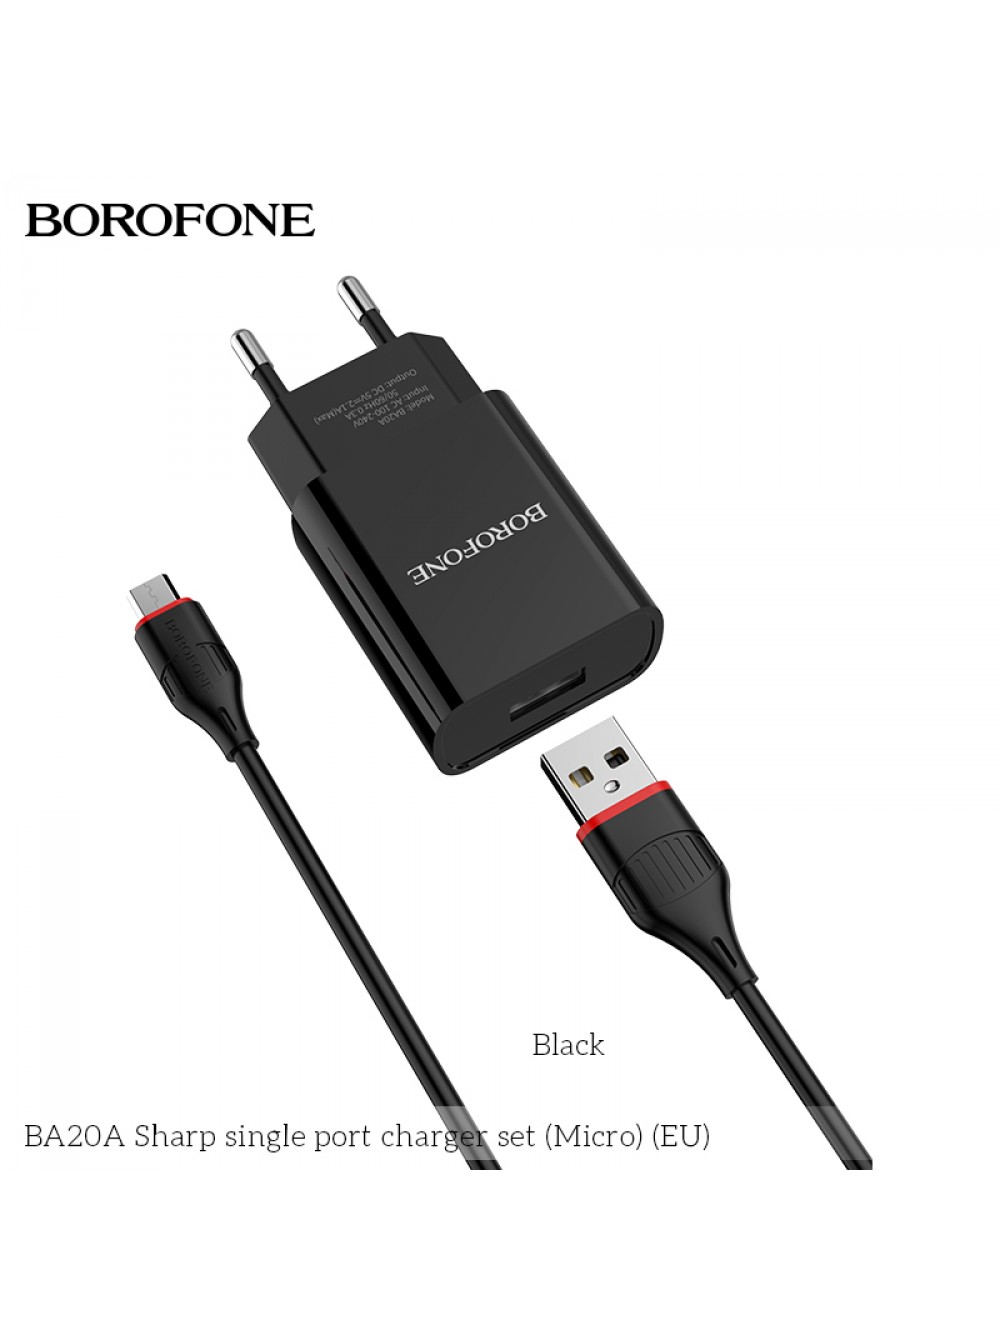 Адаптер от электрической сети 220V USB "Borofone" BA20A 5В 2,1А + кабель microUSB